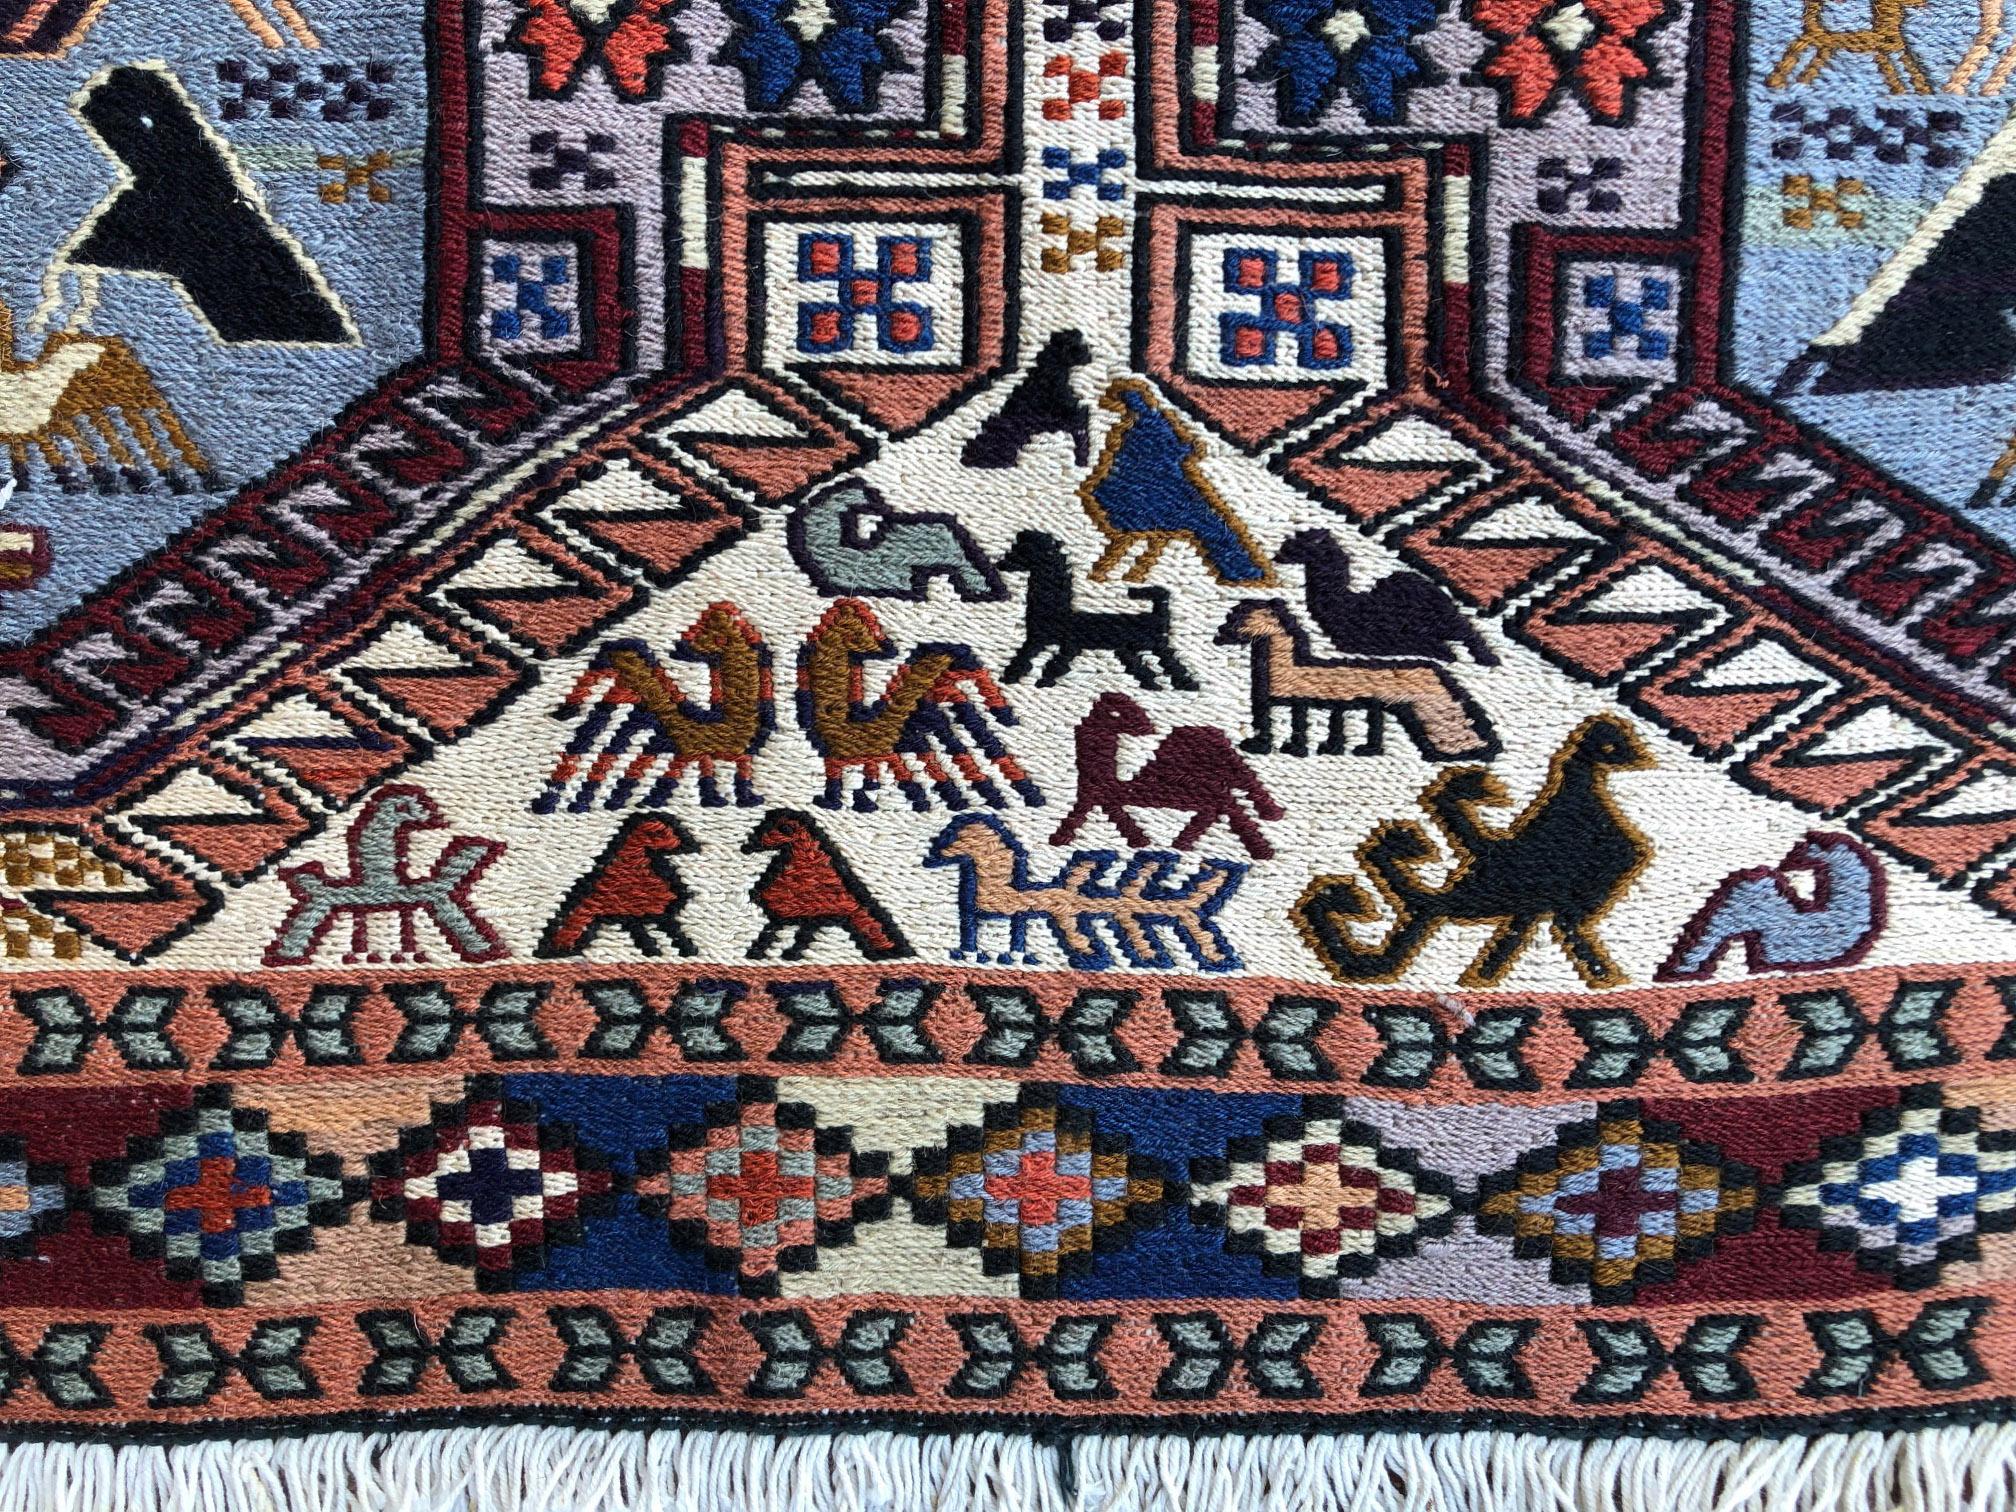 Persian Sumak Multi-Color Tribal Animal Motif Kilim Rug For Sale 3